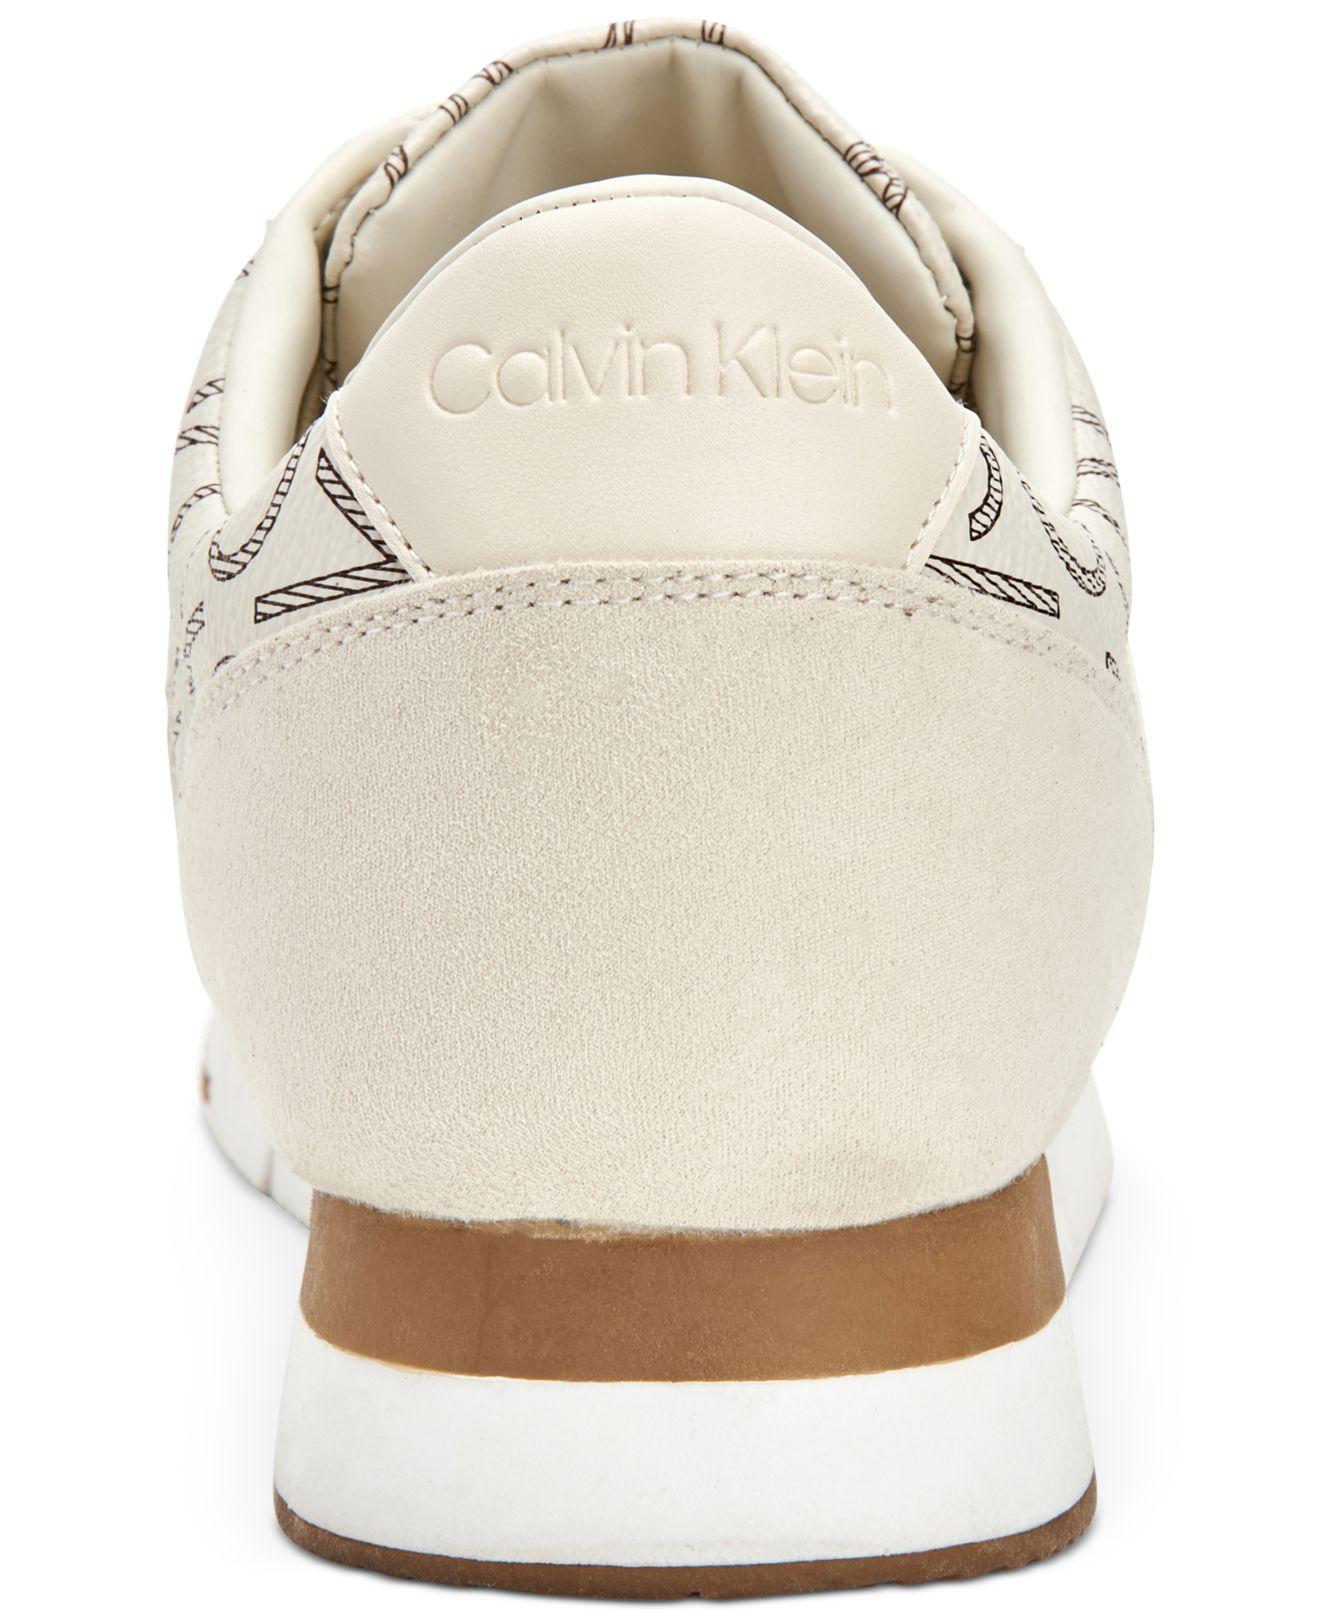 Calvin Klein Tea Sneakers in White/Gold (White) | Lyst